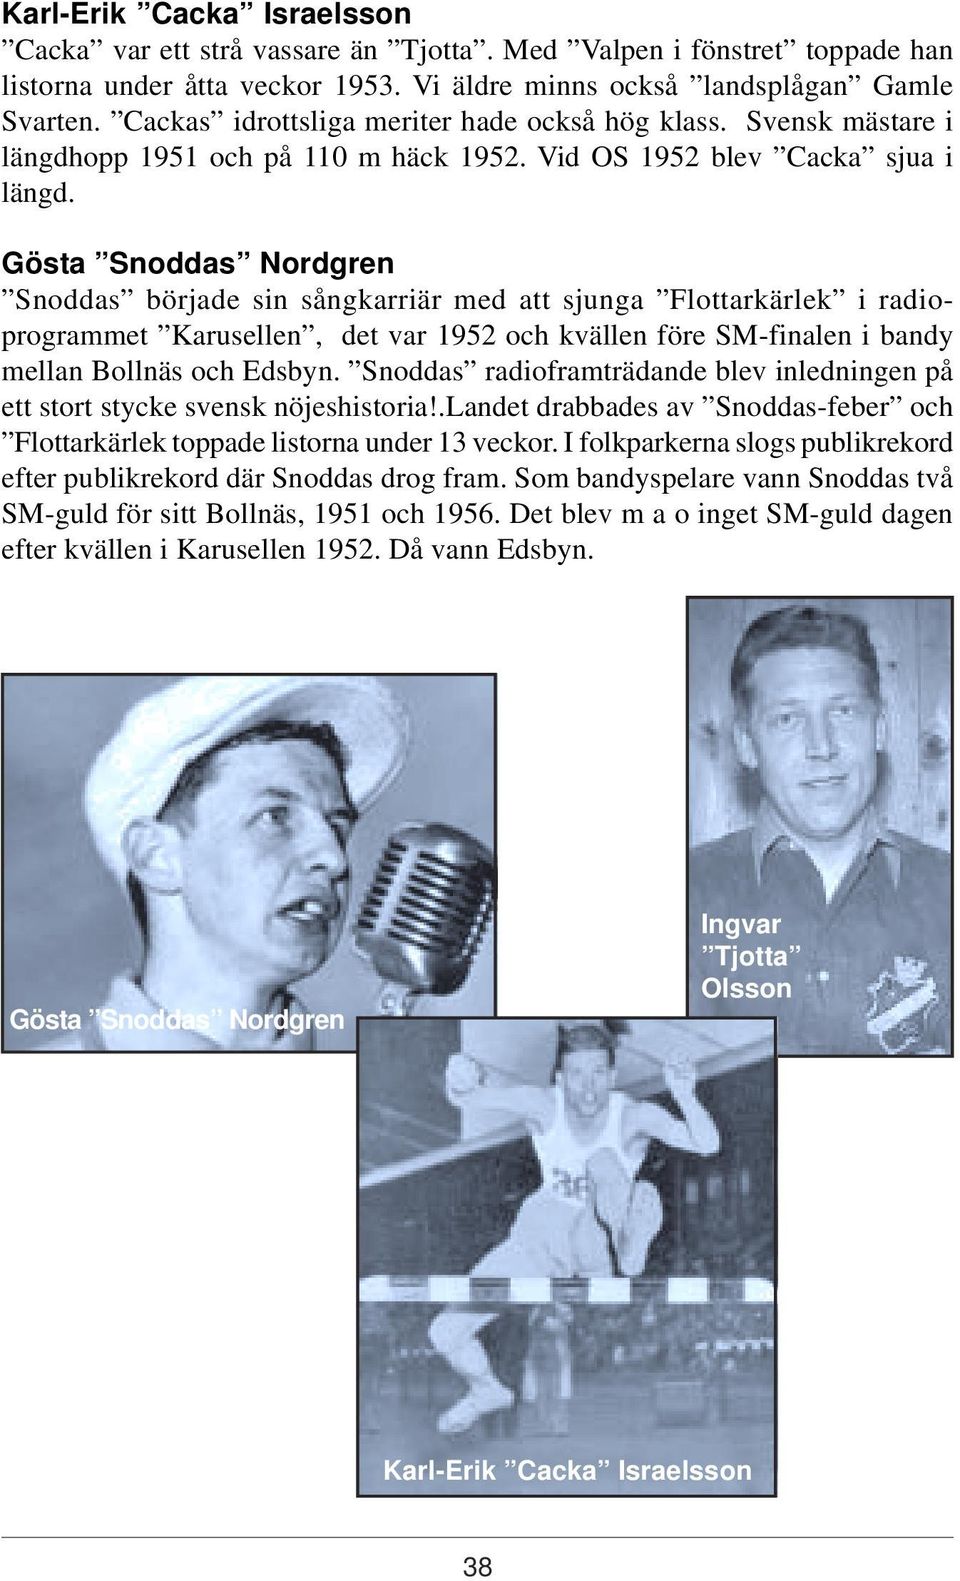 Gösta Snoddas Nordgren Snoddas började sin sångkarriär med att sjunga Flottarkärlek i radioprogrammet Karusellen, det var 1952 och kvällen före SM-finalen i bandy mellan Bollnäs och Edsbyn.